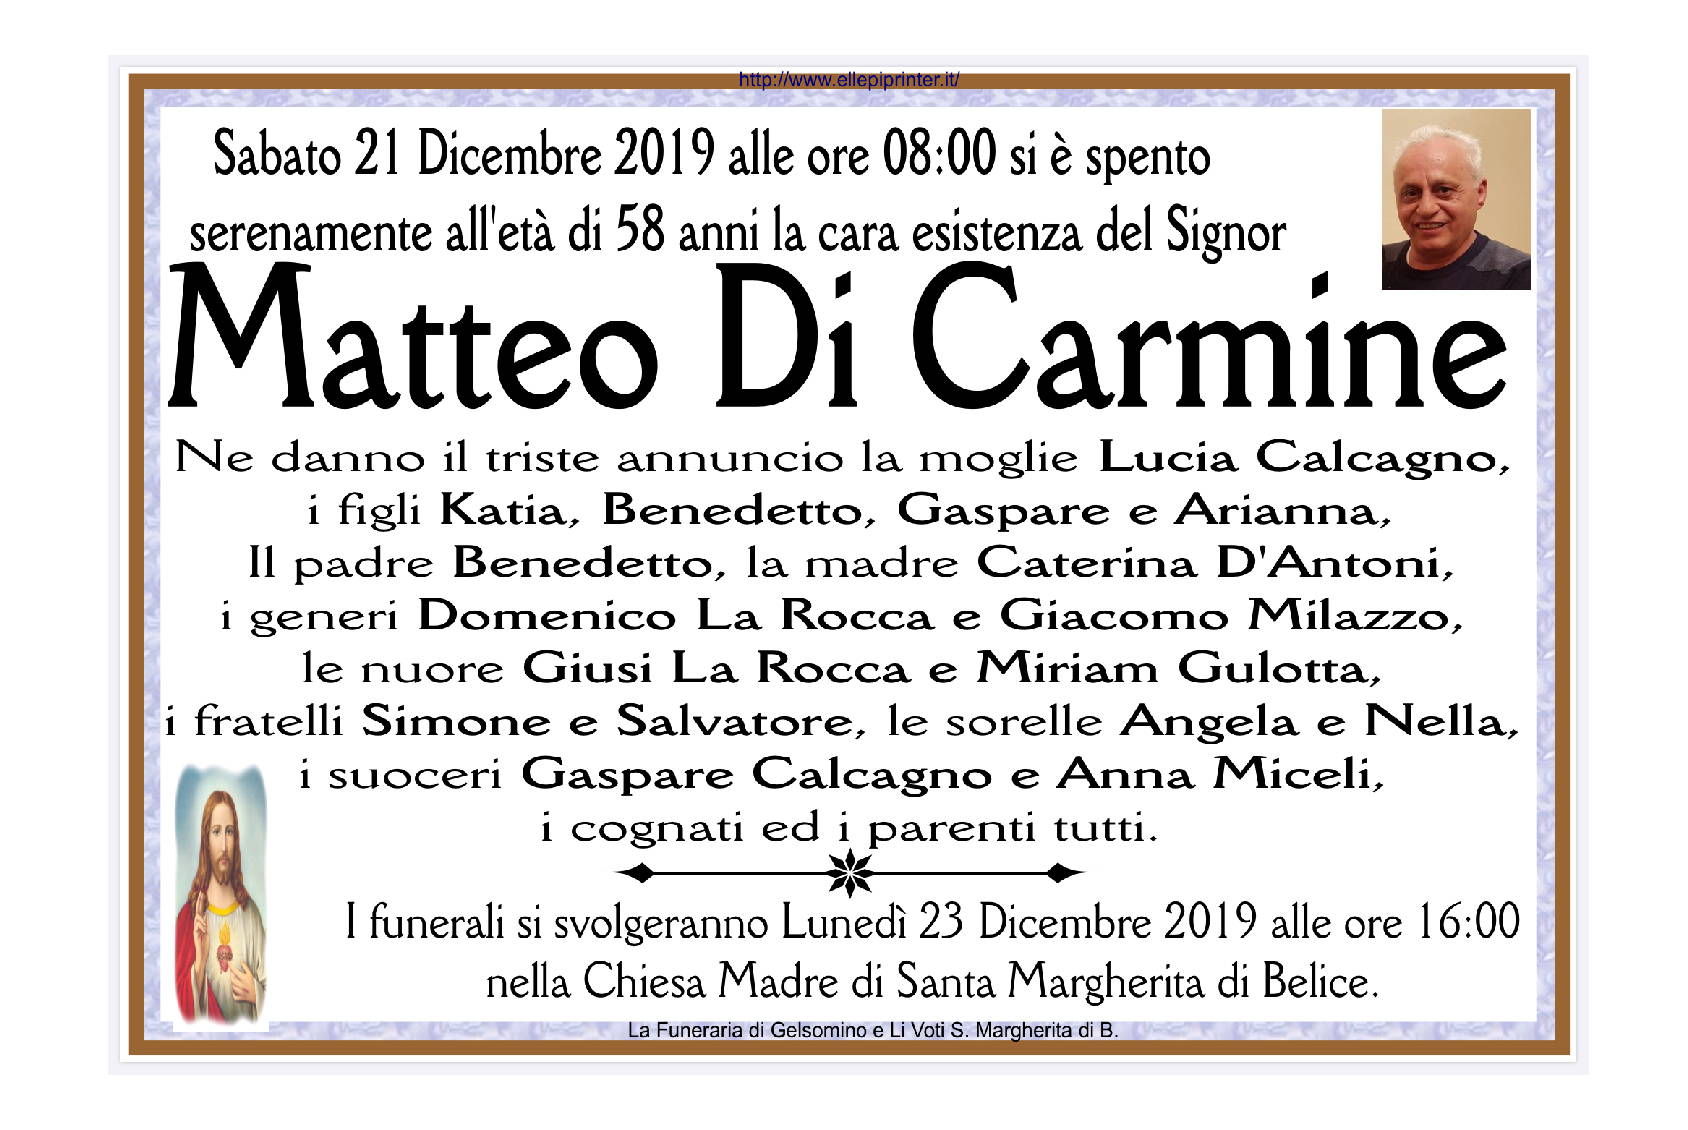 Matteo Di Carmine